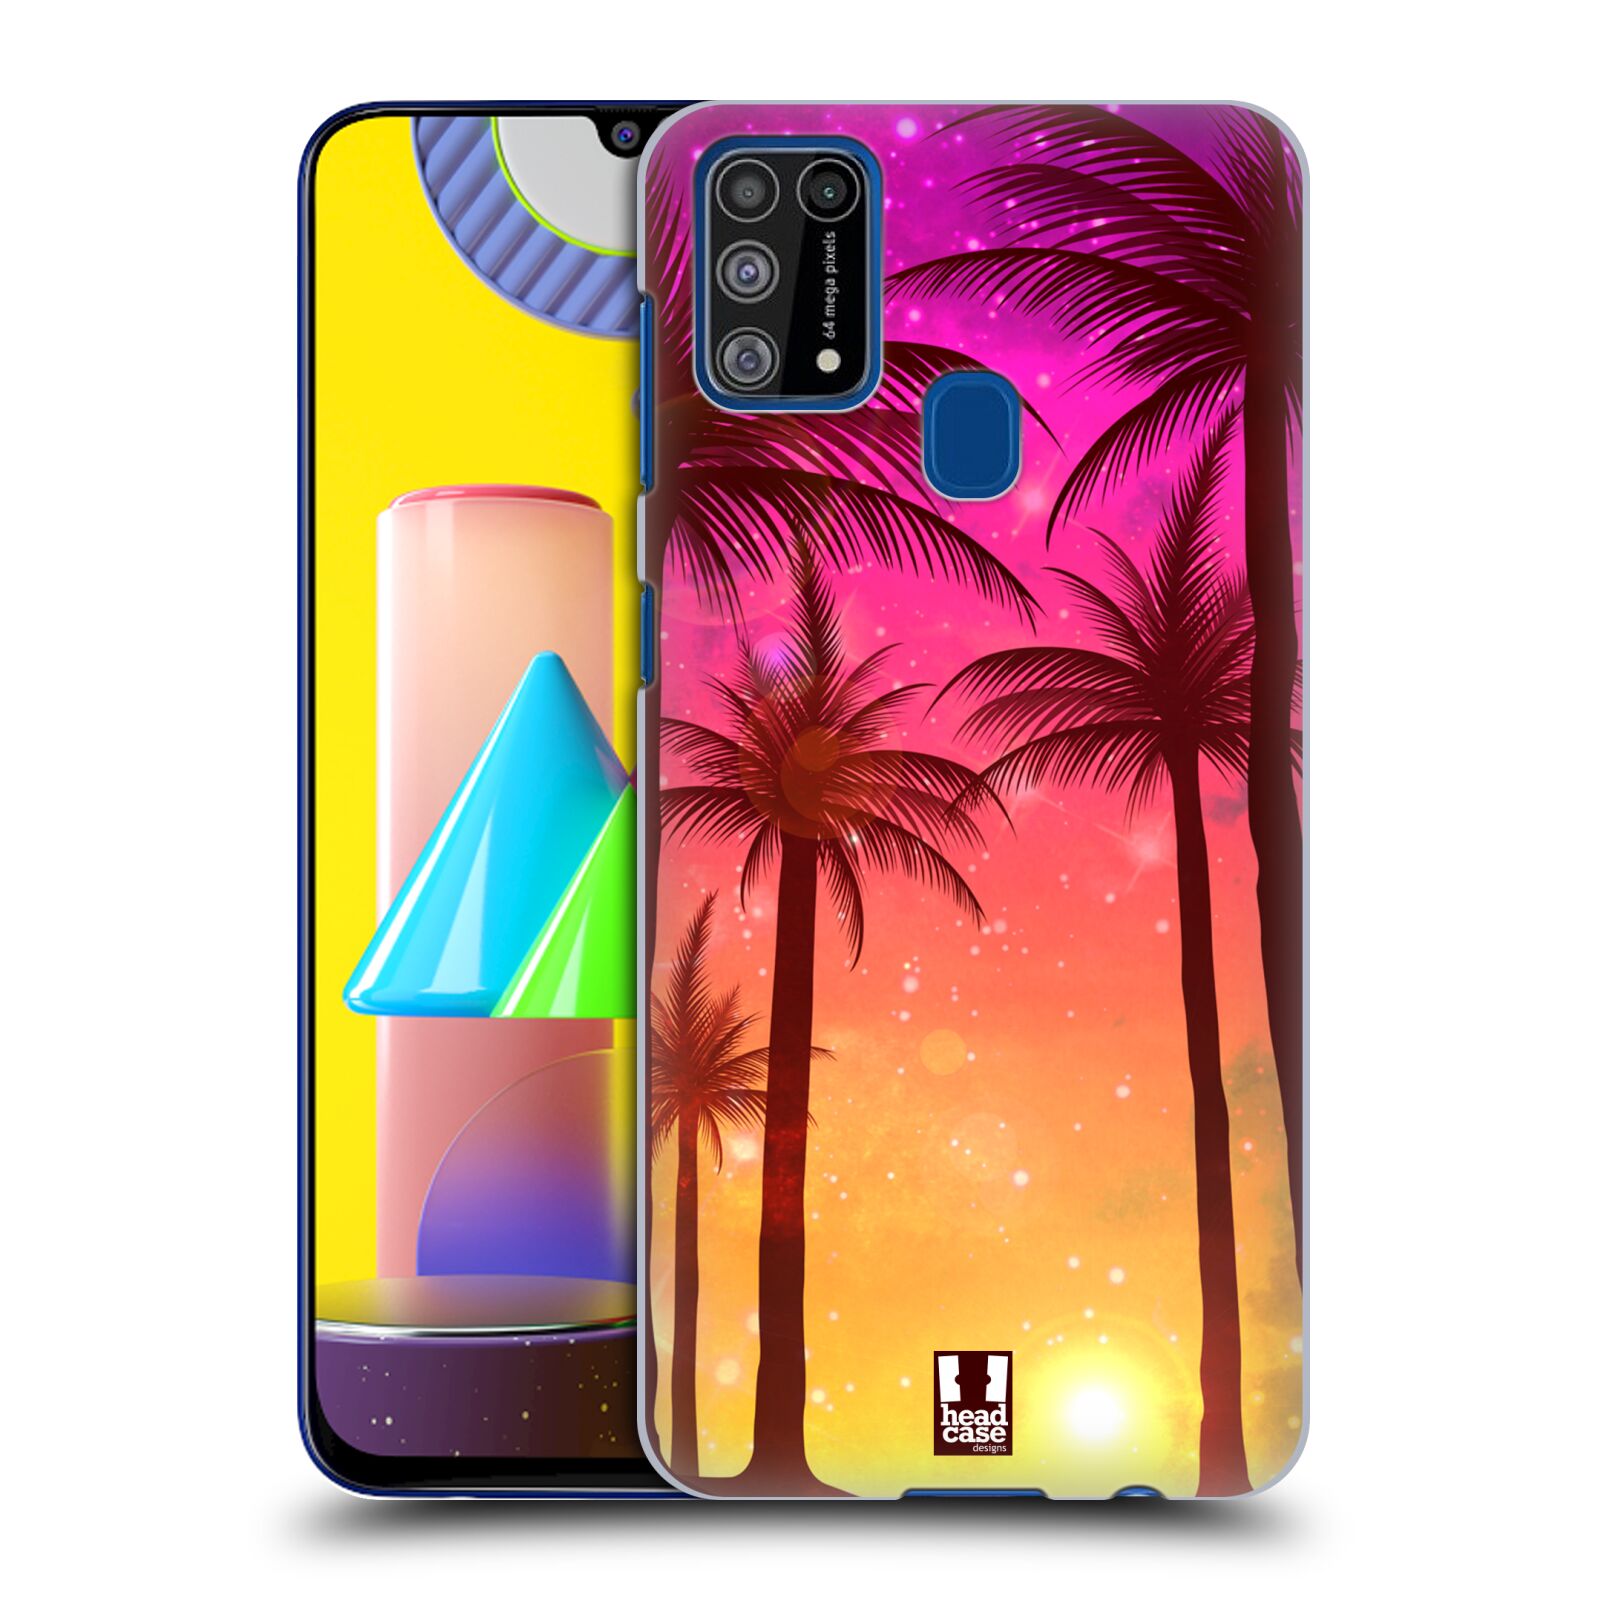 Plastový obal HEAD CASE na mobil Samsung Galaxy M31 vzor Kreslený motiv silueta moře a palmy RŮŽOVÁ